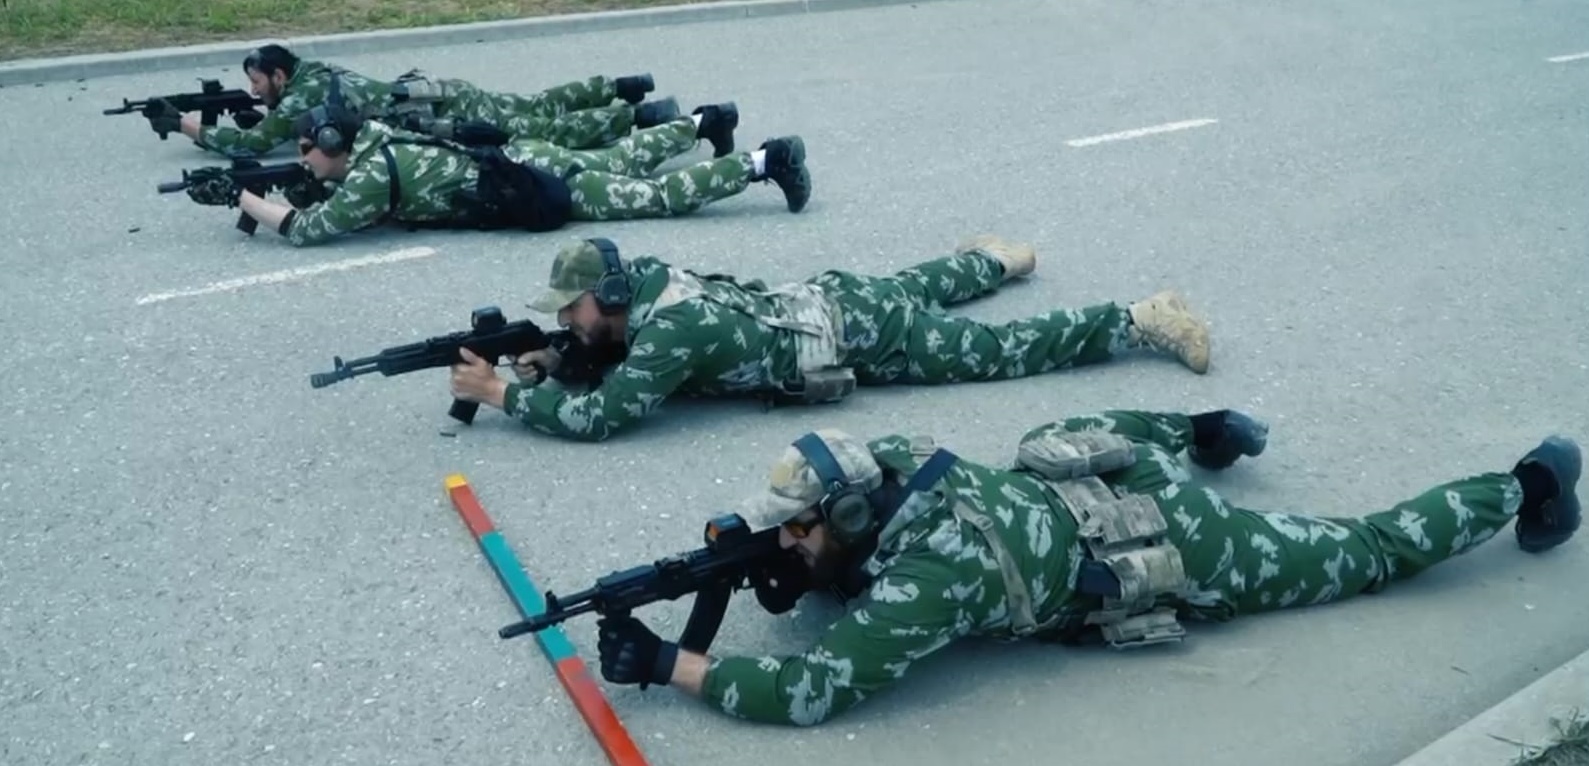 "VI STE MOJI NAJBOLJI" Kadirov objavio snimke obuke čečenskih boraca i poručio:"Teško na treningu